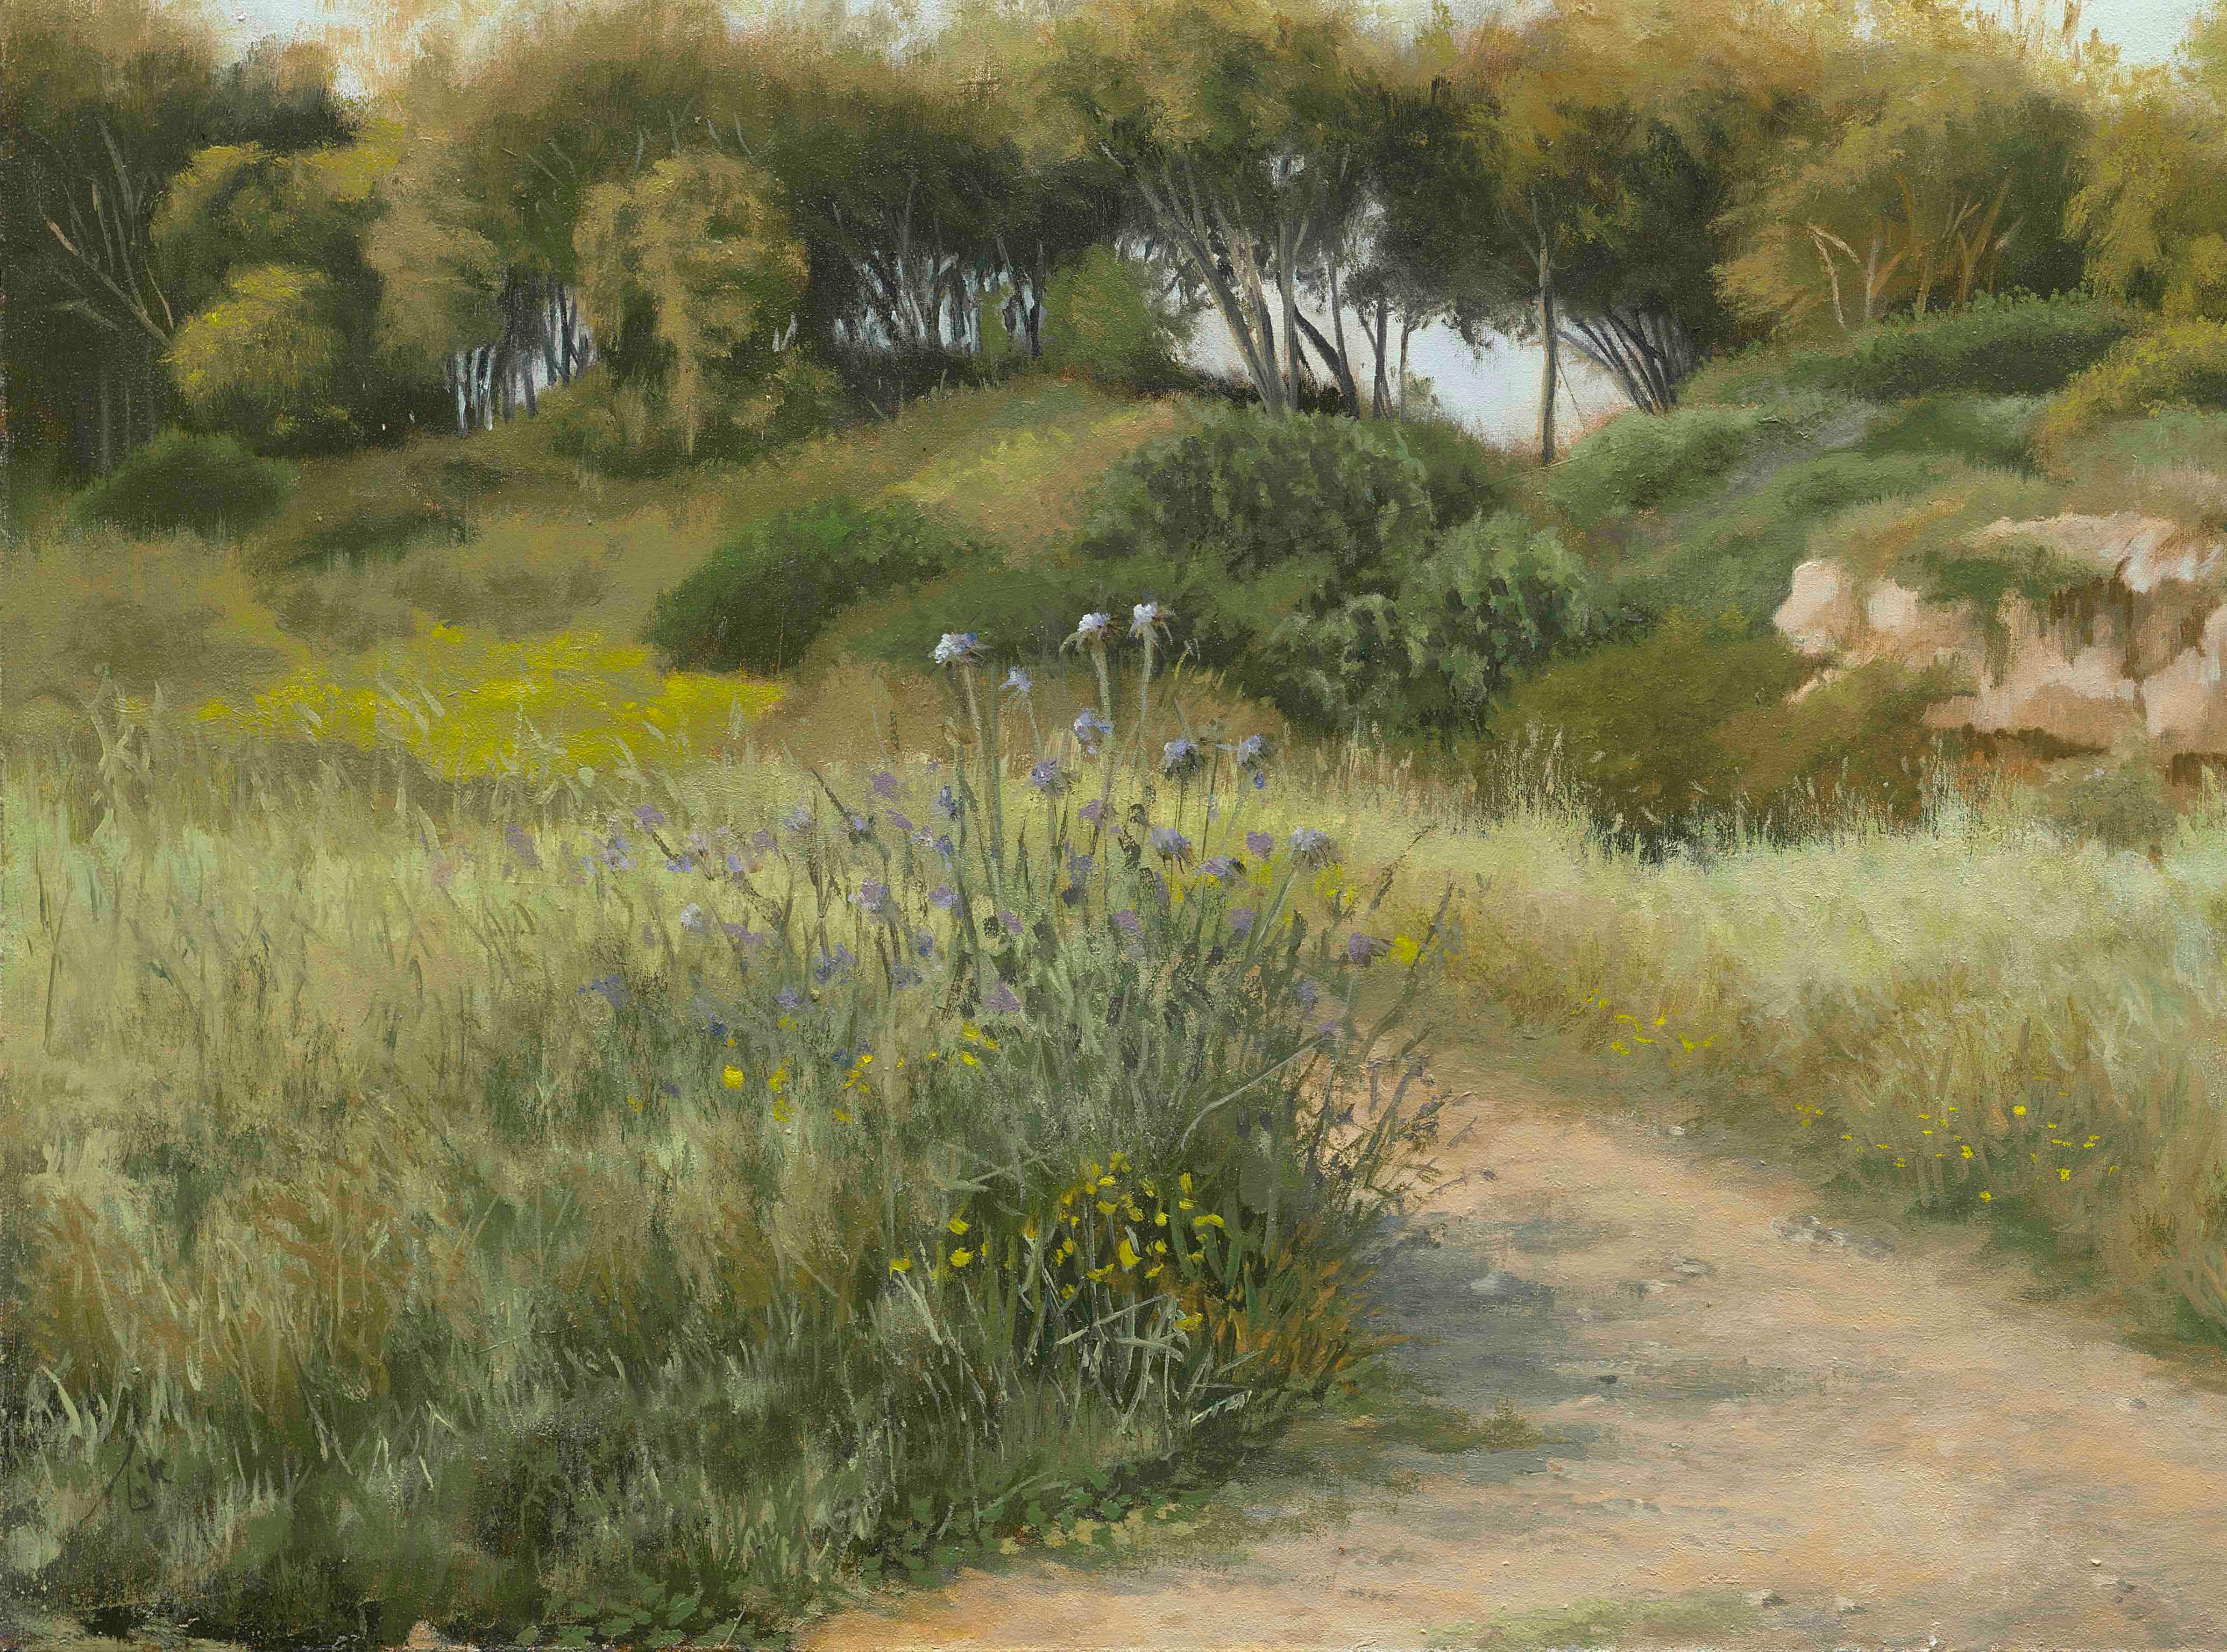 Thistle - landscape painting - Painting by Ayelet Katz